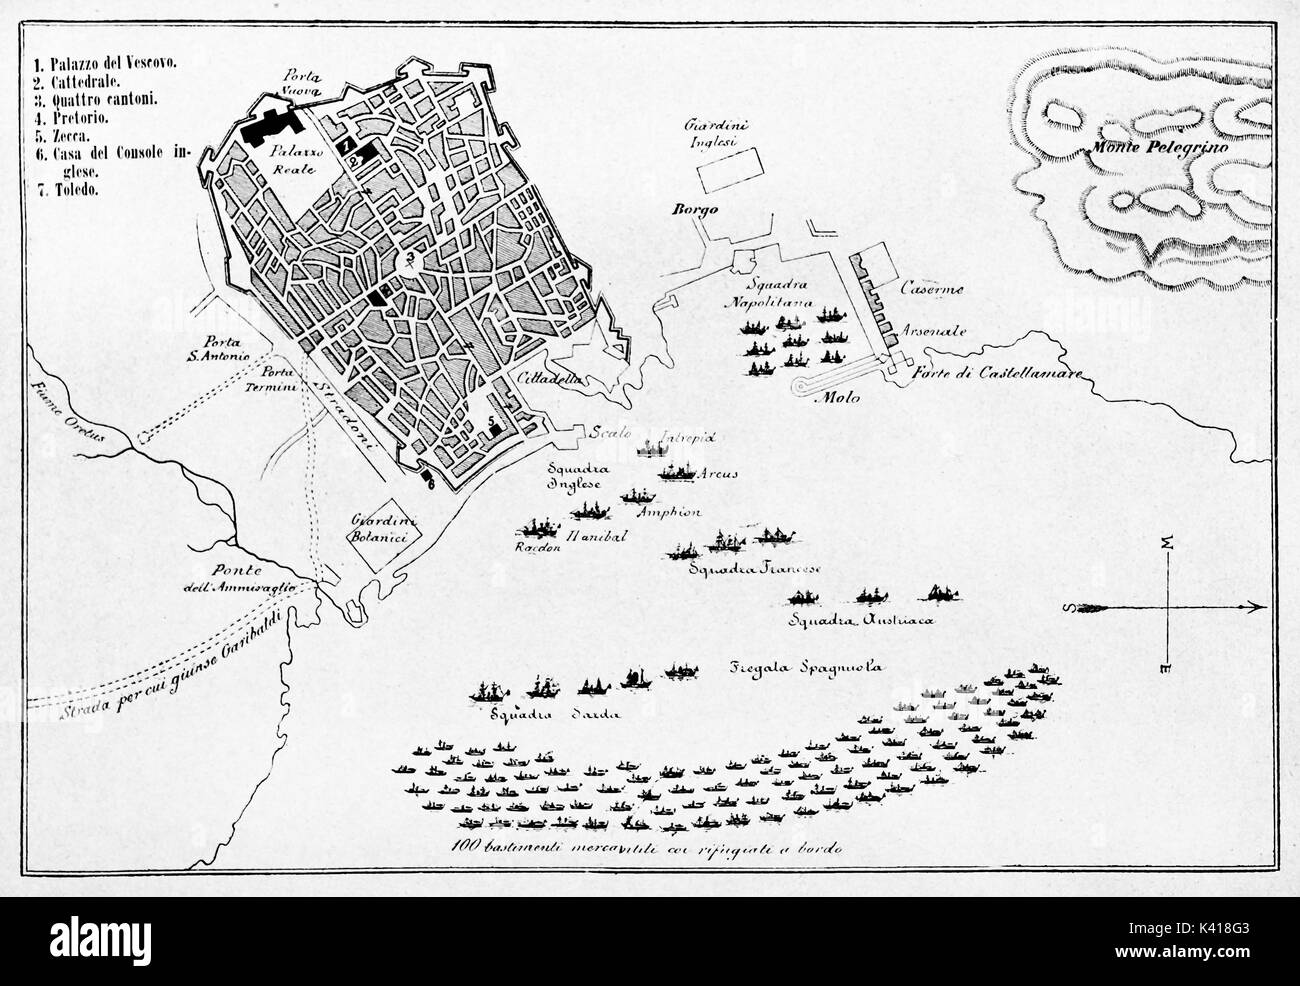 Vecchia mappa di Palermo e dintorni nel maggio 1860 con posizioni delle flotte nel golfo durante l'insurrezione. Da E. Matania pubblicato su Garibaldi e i suoi tempi Milano Italia 1884 Insurrezione di Palermo mappa Foto Stock